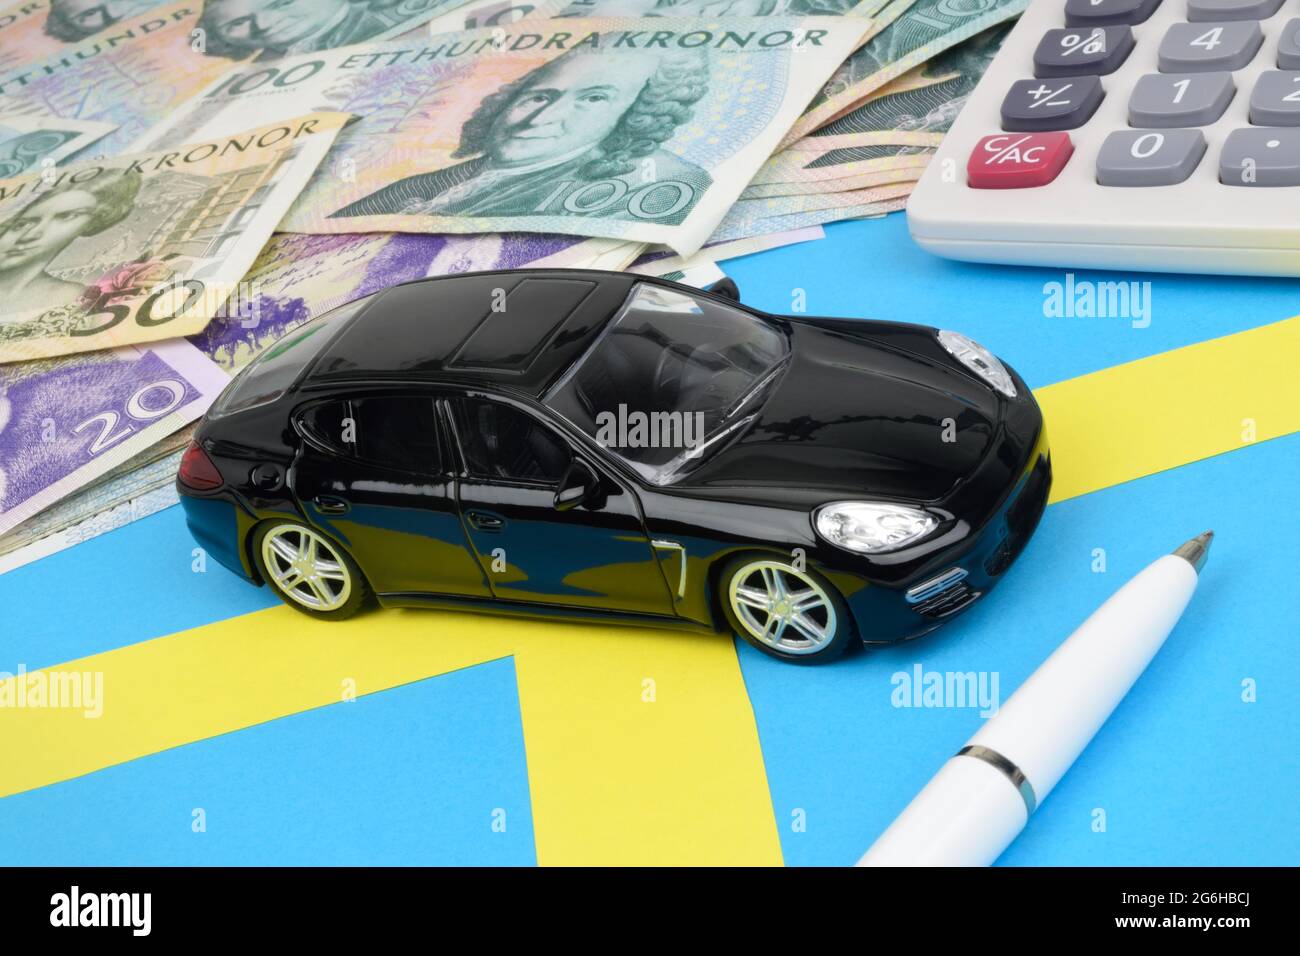 Une voiture de jouet noire sur un drapeau suédois avec des notes de Kronor,  une calculatrice et un stylo Photo Stock - Alamy